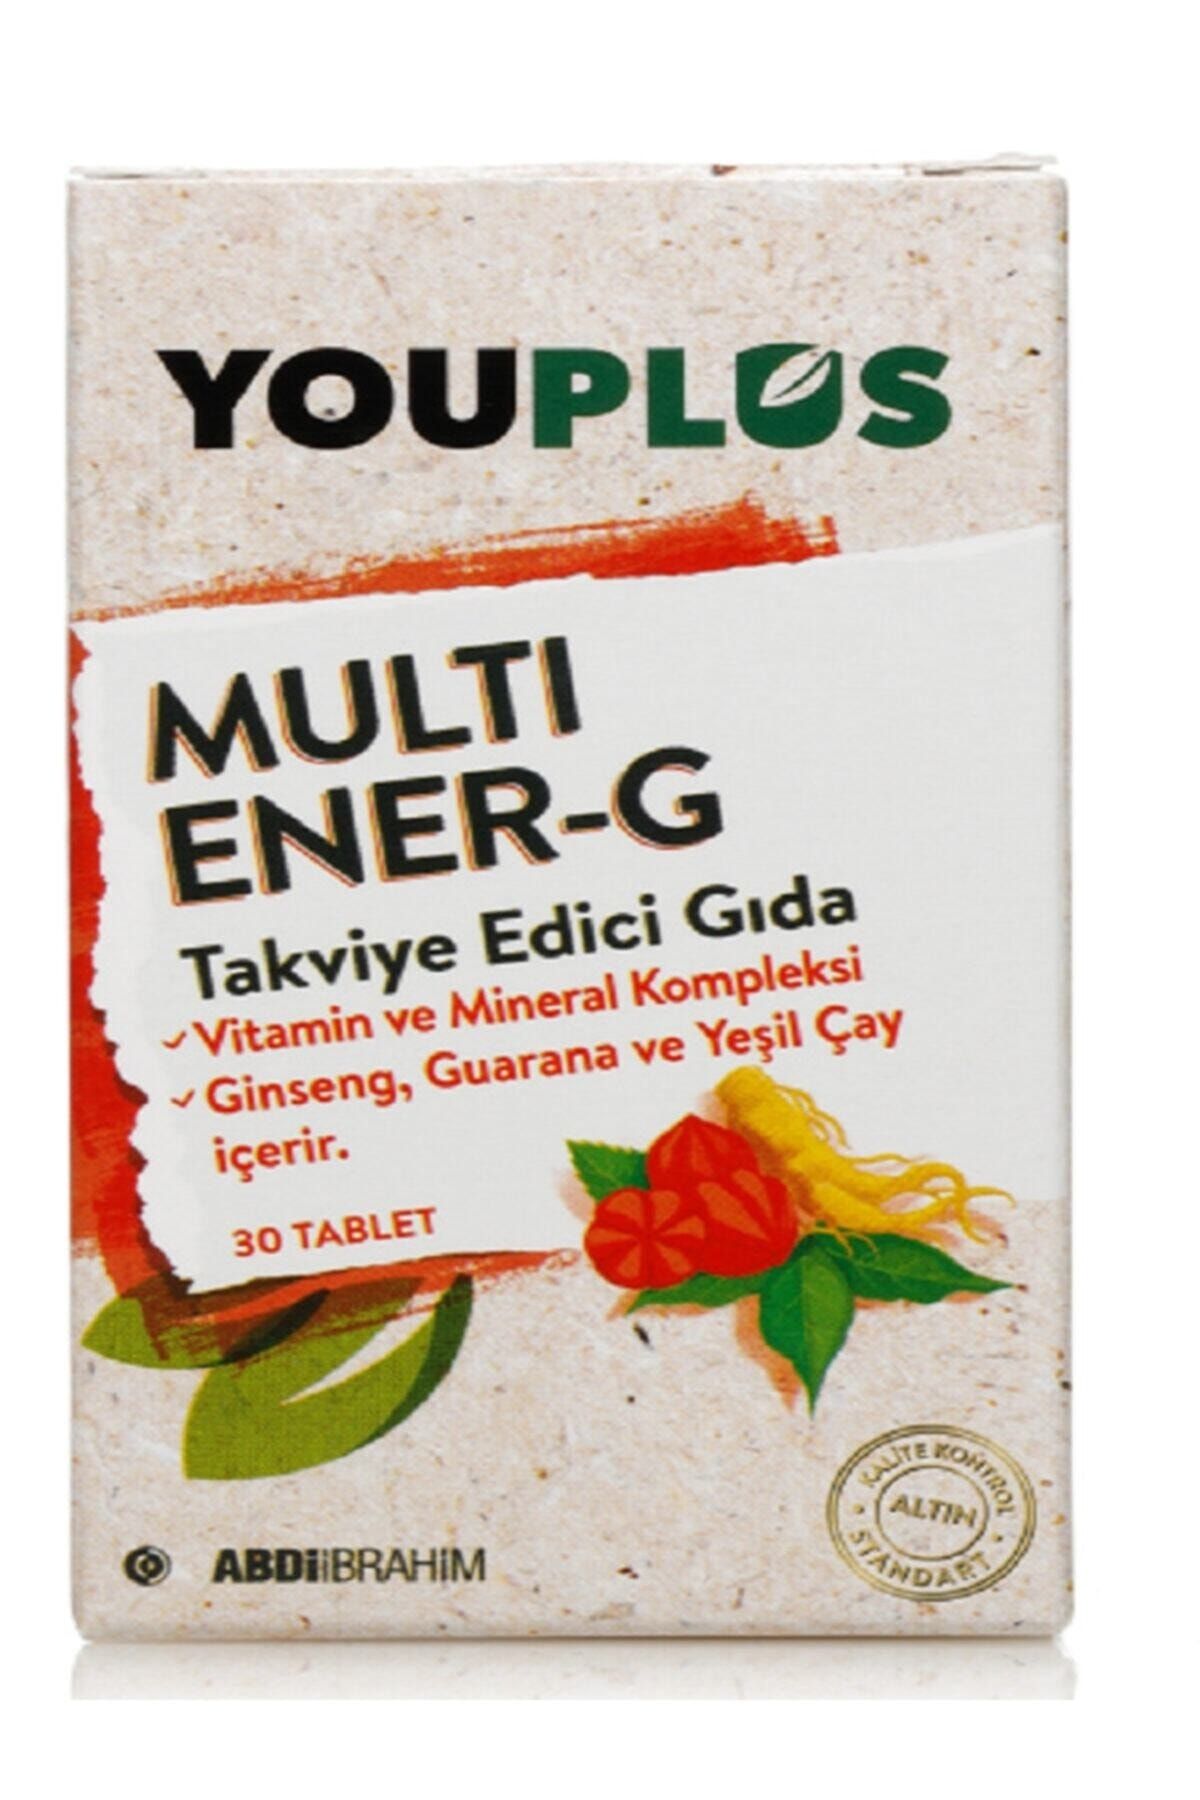 Youplus Yeni Ambalaj 30 Tablet Muti Ener-g